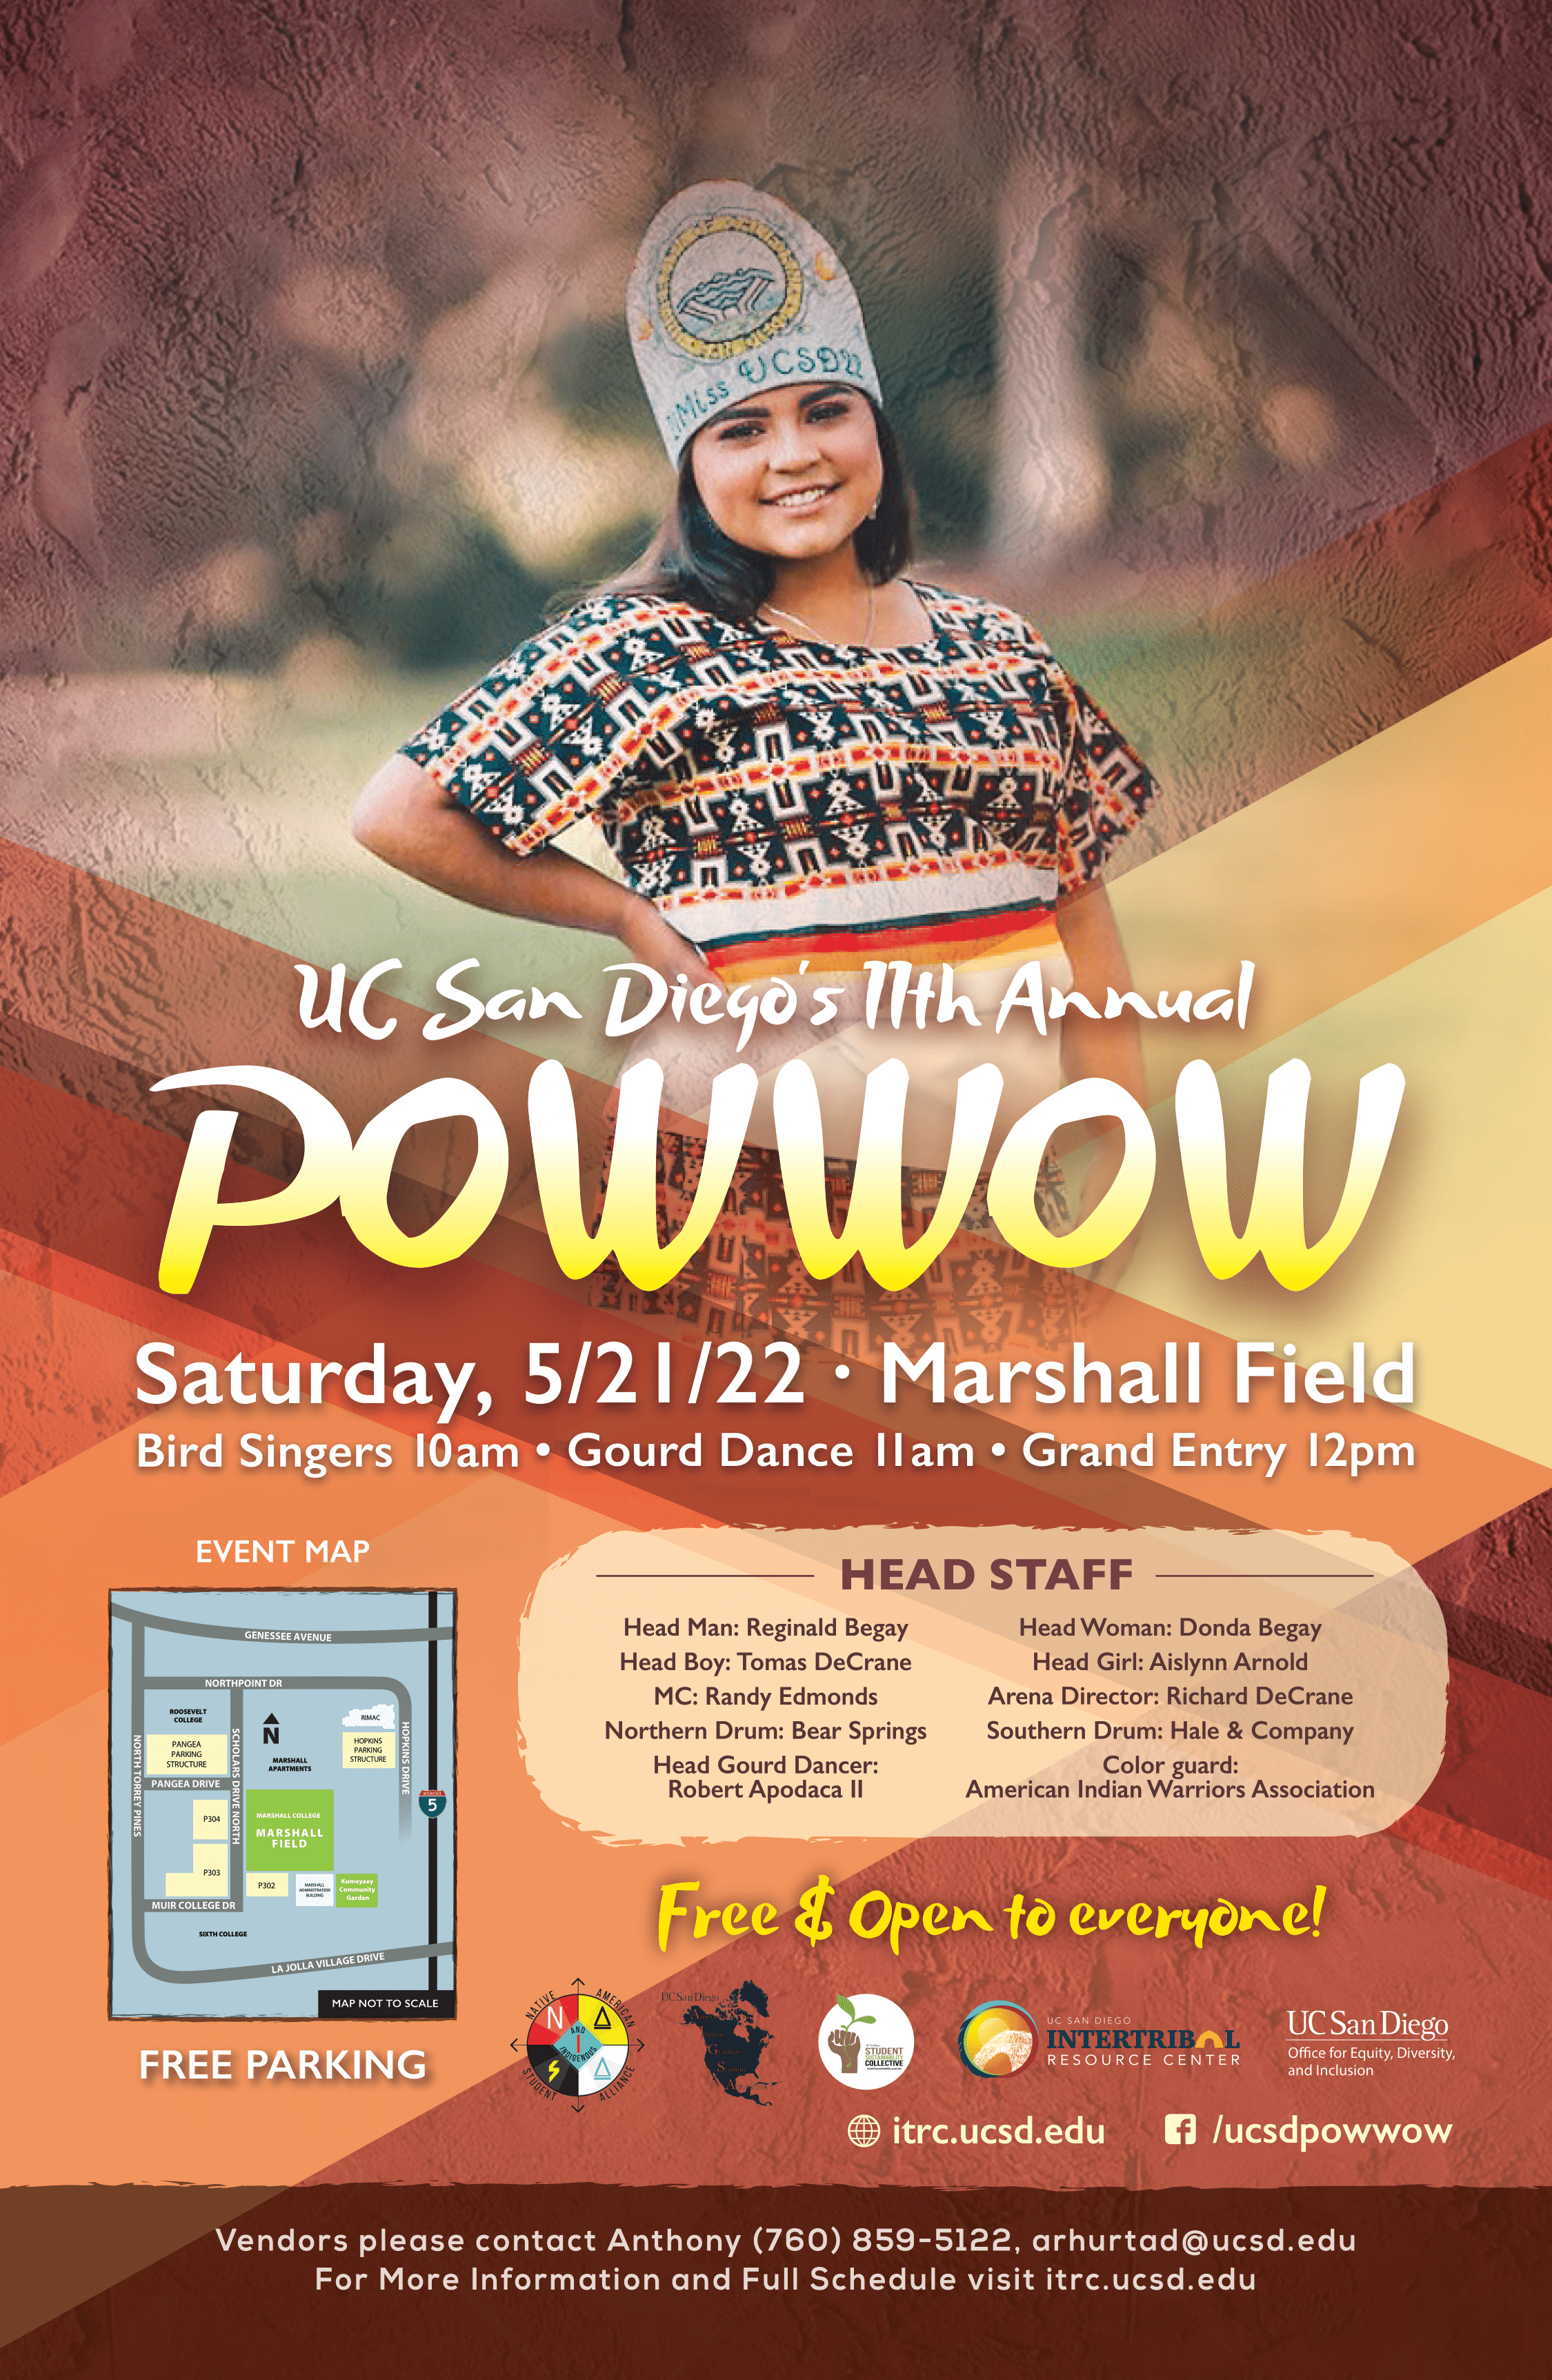 UC San Diego 11th Annual Powwow